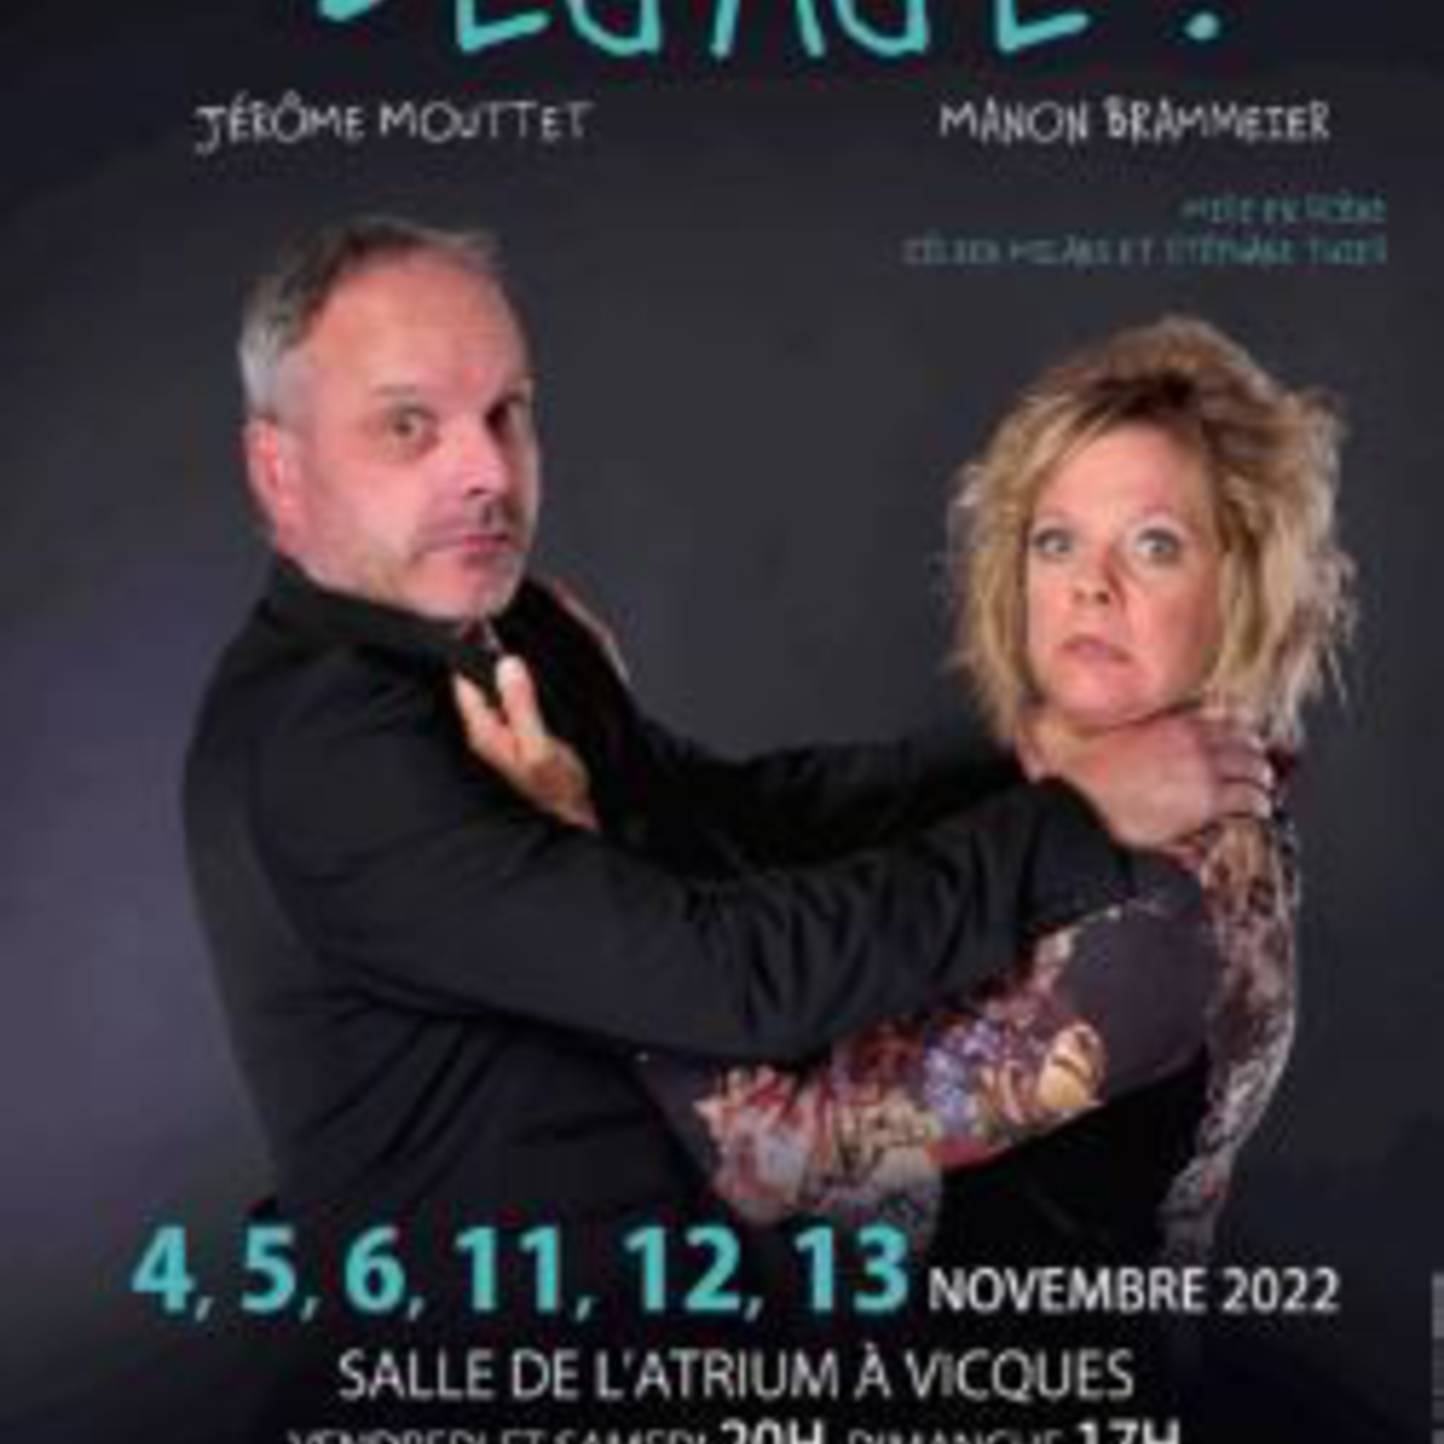 Dégage !, Jérôme Mouttet et Manon Brammeier